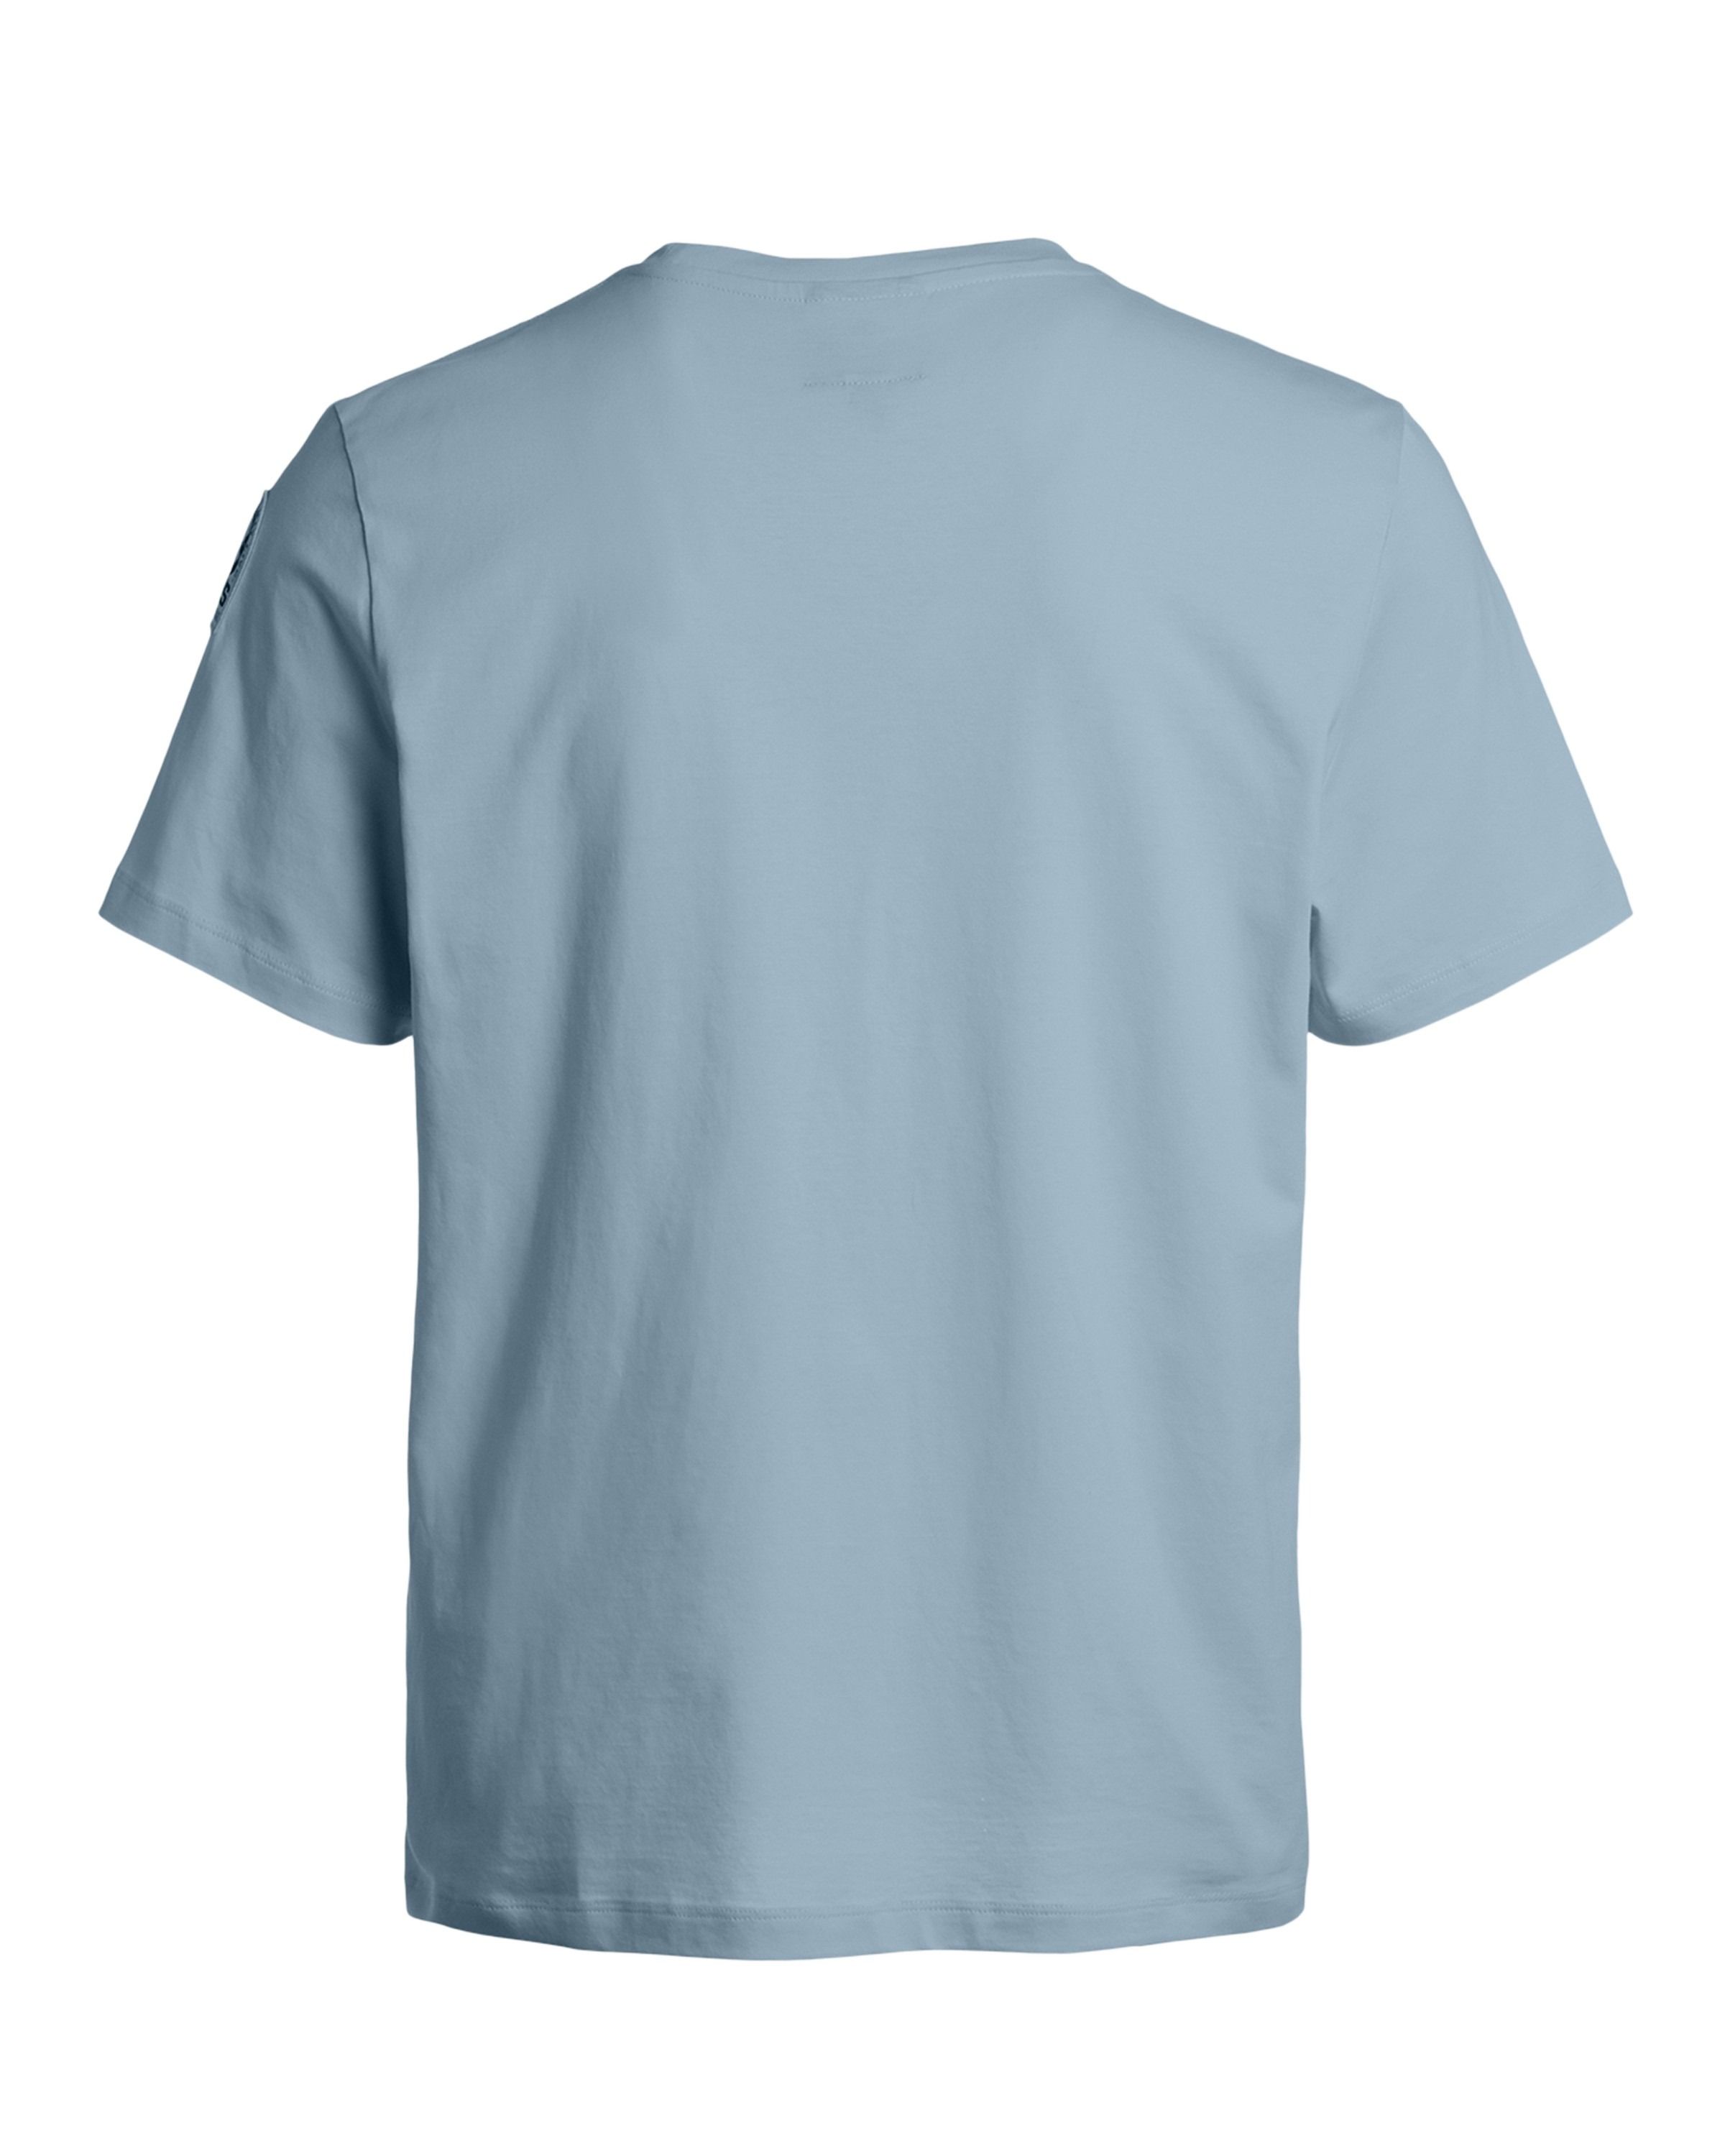 Shispare T-Shirt